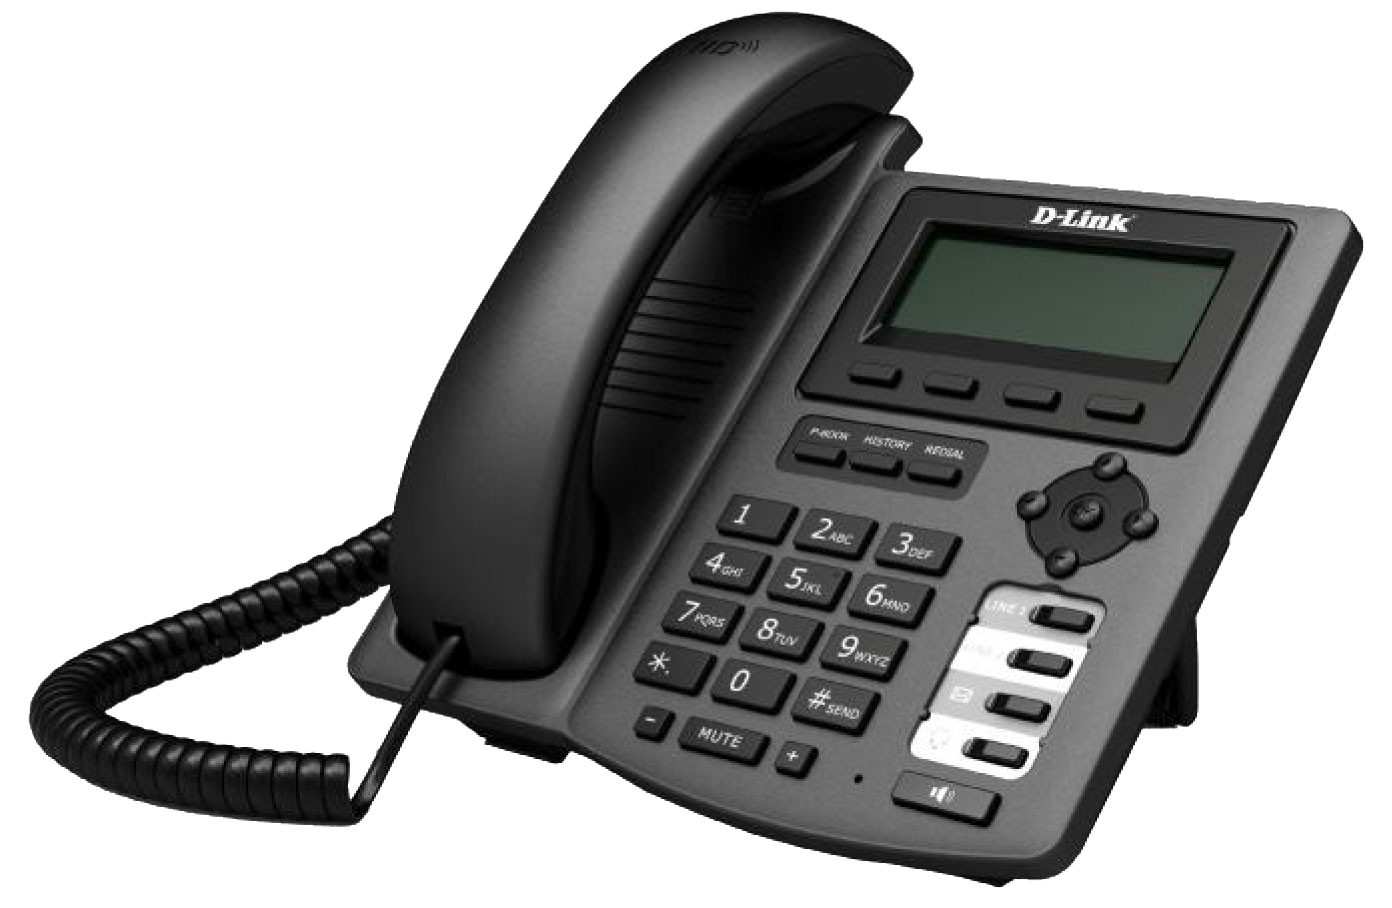 Телефон д 65. VOIP-телефон d-link (DPH-150s). D-link DPH-150se. IP телефон d-link DPH-150se/f5. D link DPH 150se IP.